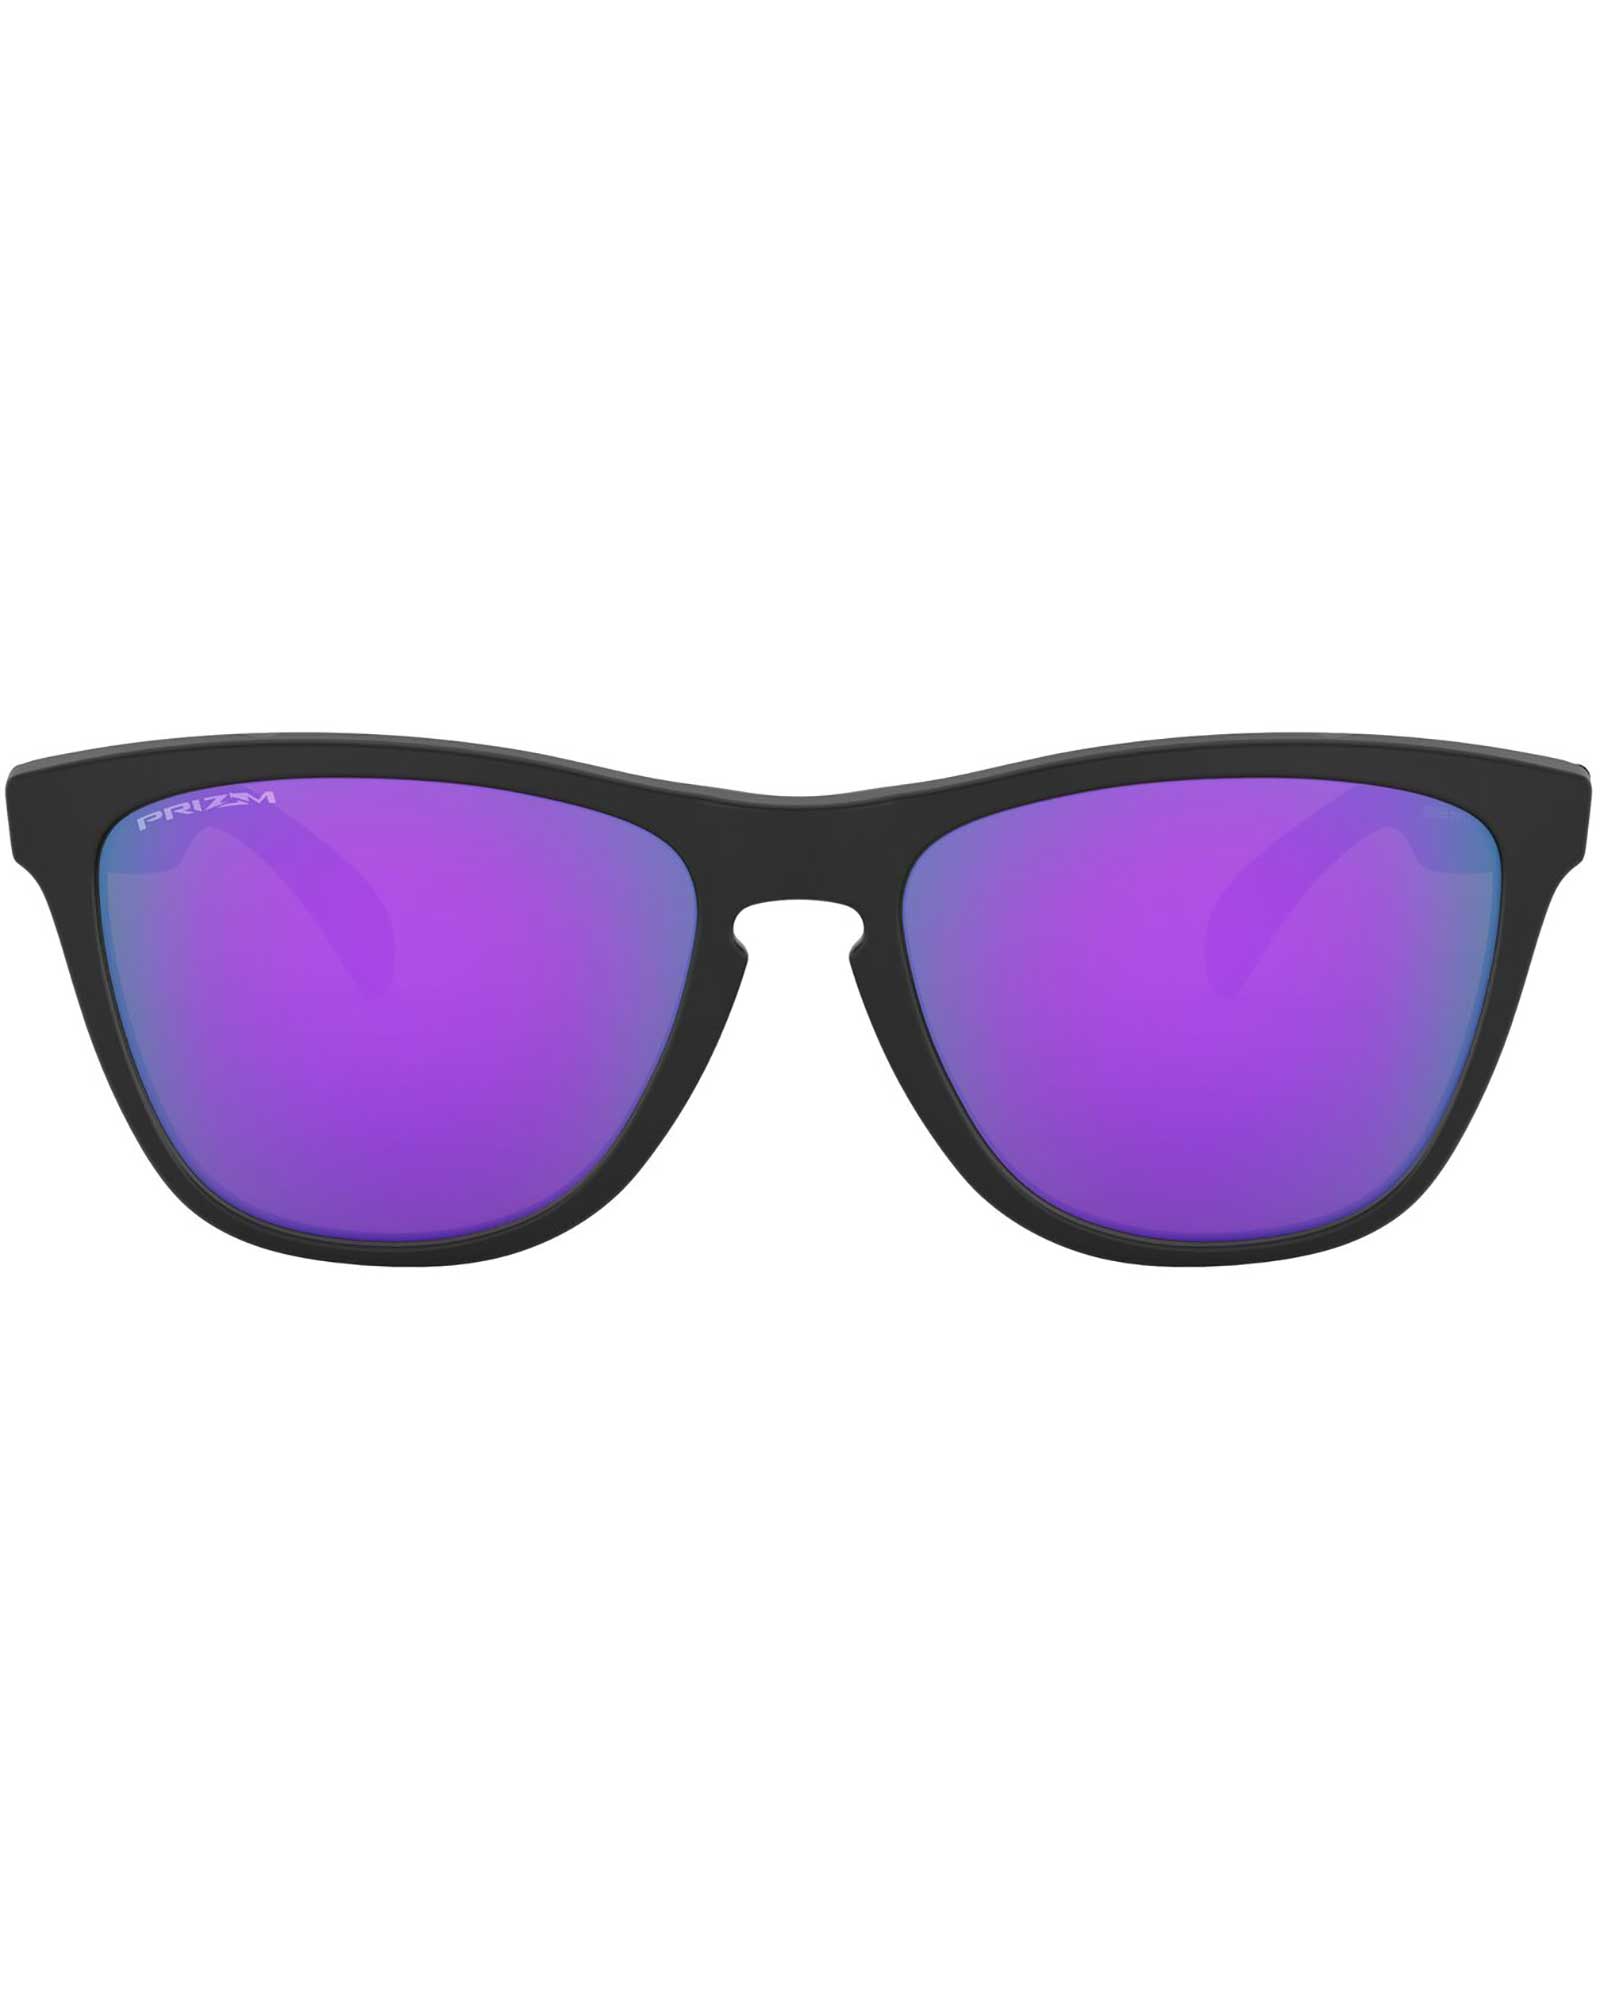 Oakley Frogskins Matte Black / Prizm Violet Sunglasses